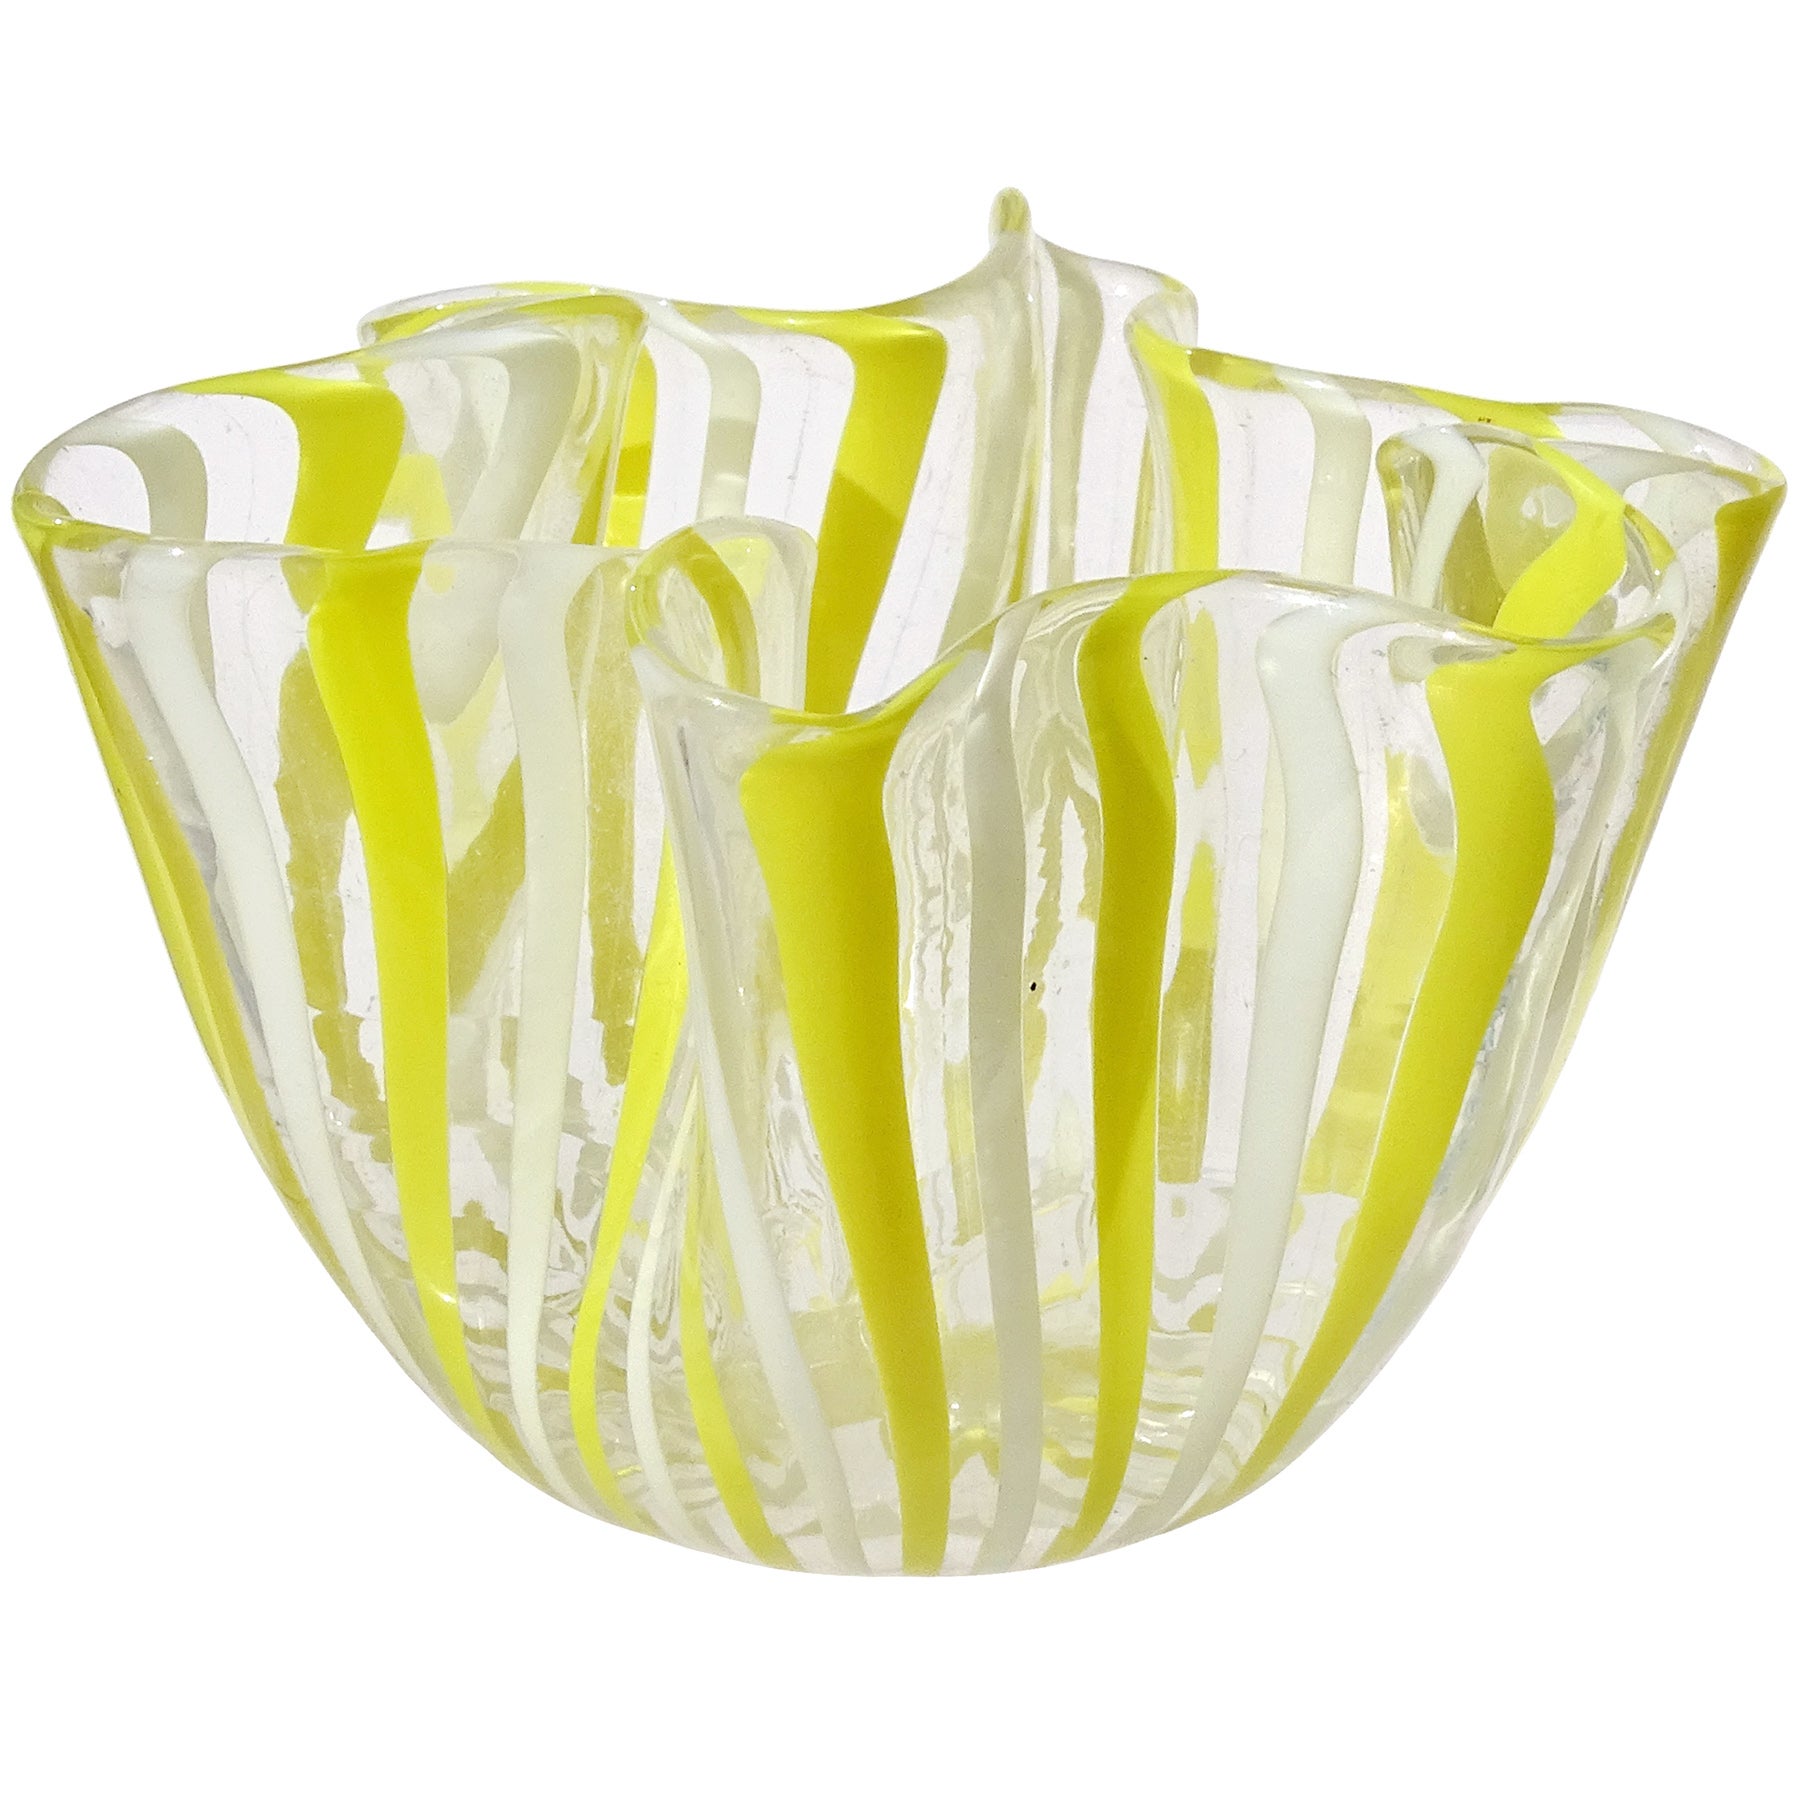 Venini Bianconi Murano Yellow White Ribbons Italian Art Glass Fazzoletto Vase For Sale